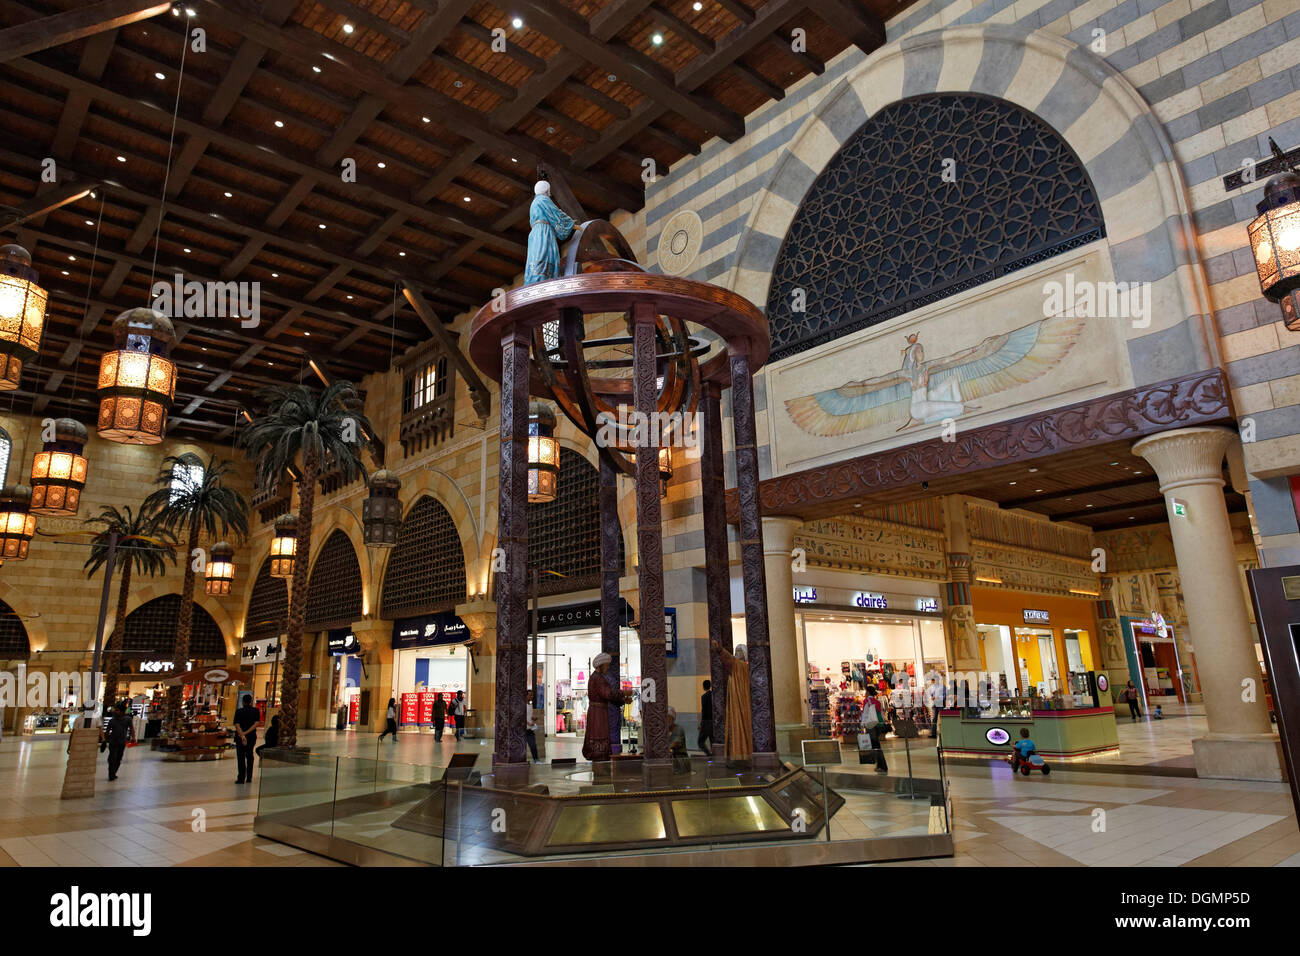 Statuengruppe in der Ibn Battuta Shopping Mall, Dubai, Vereinigte Arabische Emirate, Naher Osten, Asien Stockfoto